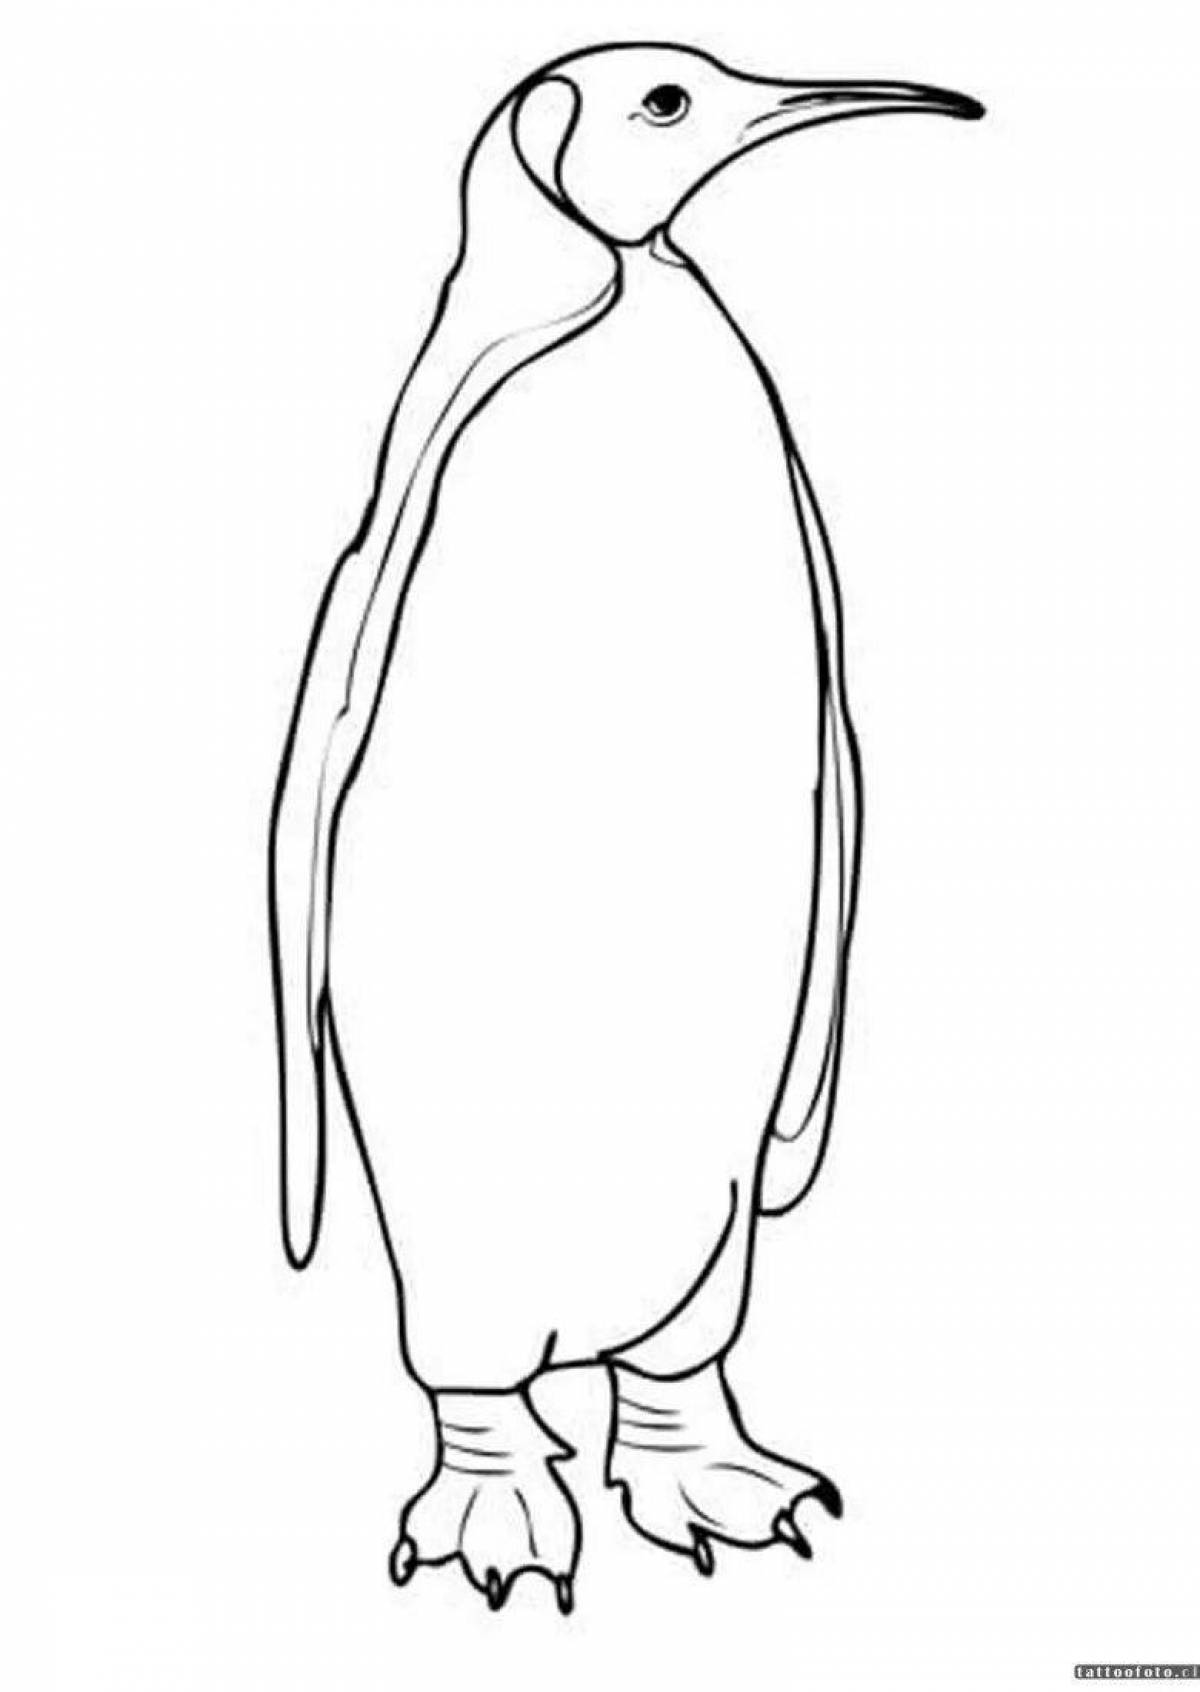 Surreal emperor penguin coloring page